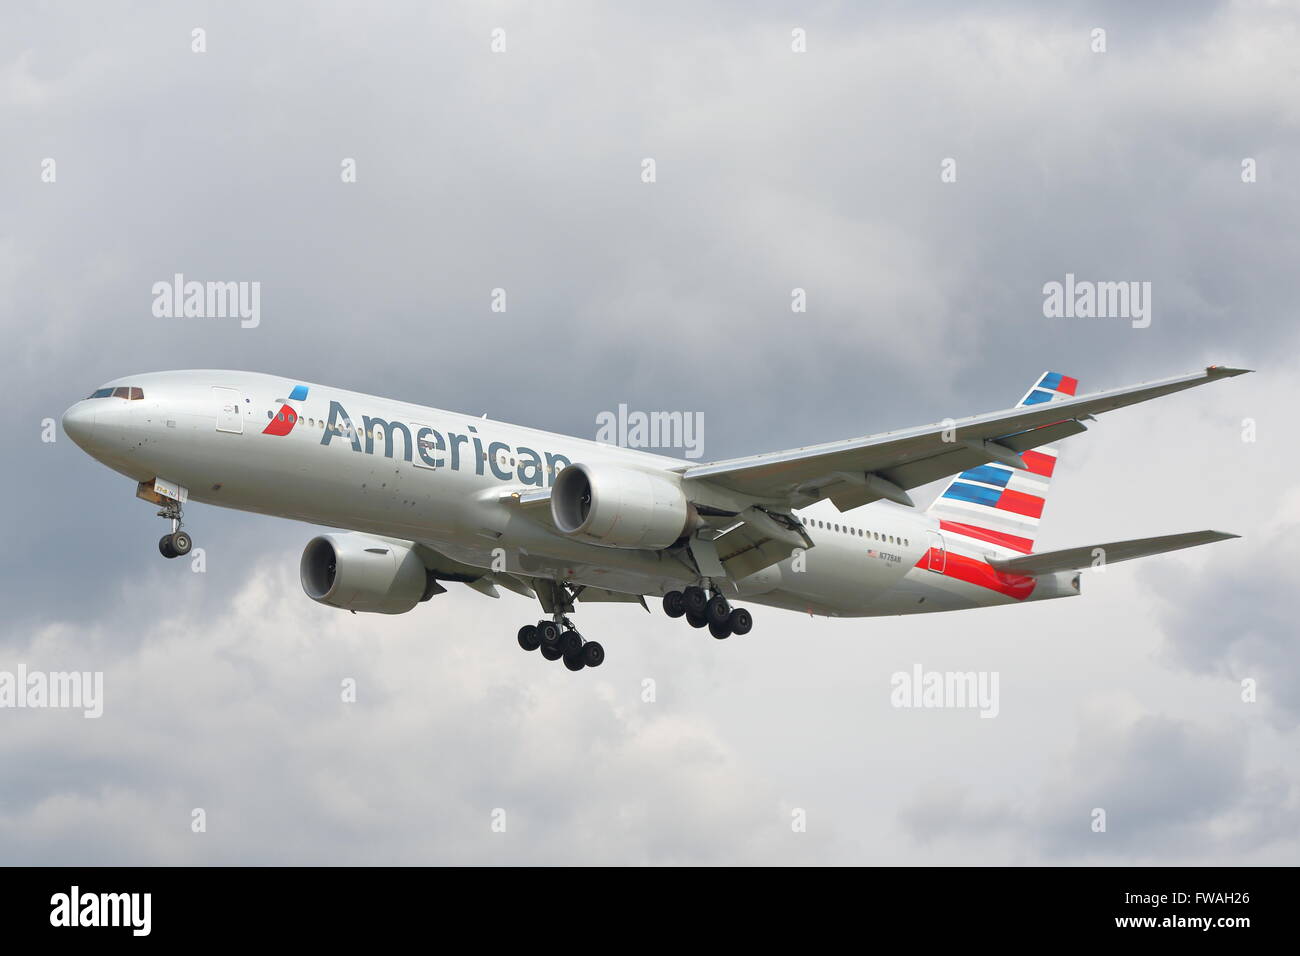 American Airlines Boeing 777-200 ER N778un arrivando all'Aeroporto Heathrow di Londra, Regno Unito Foto Stock